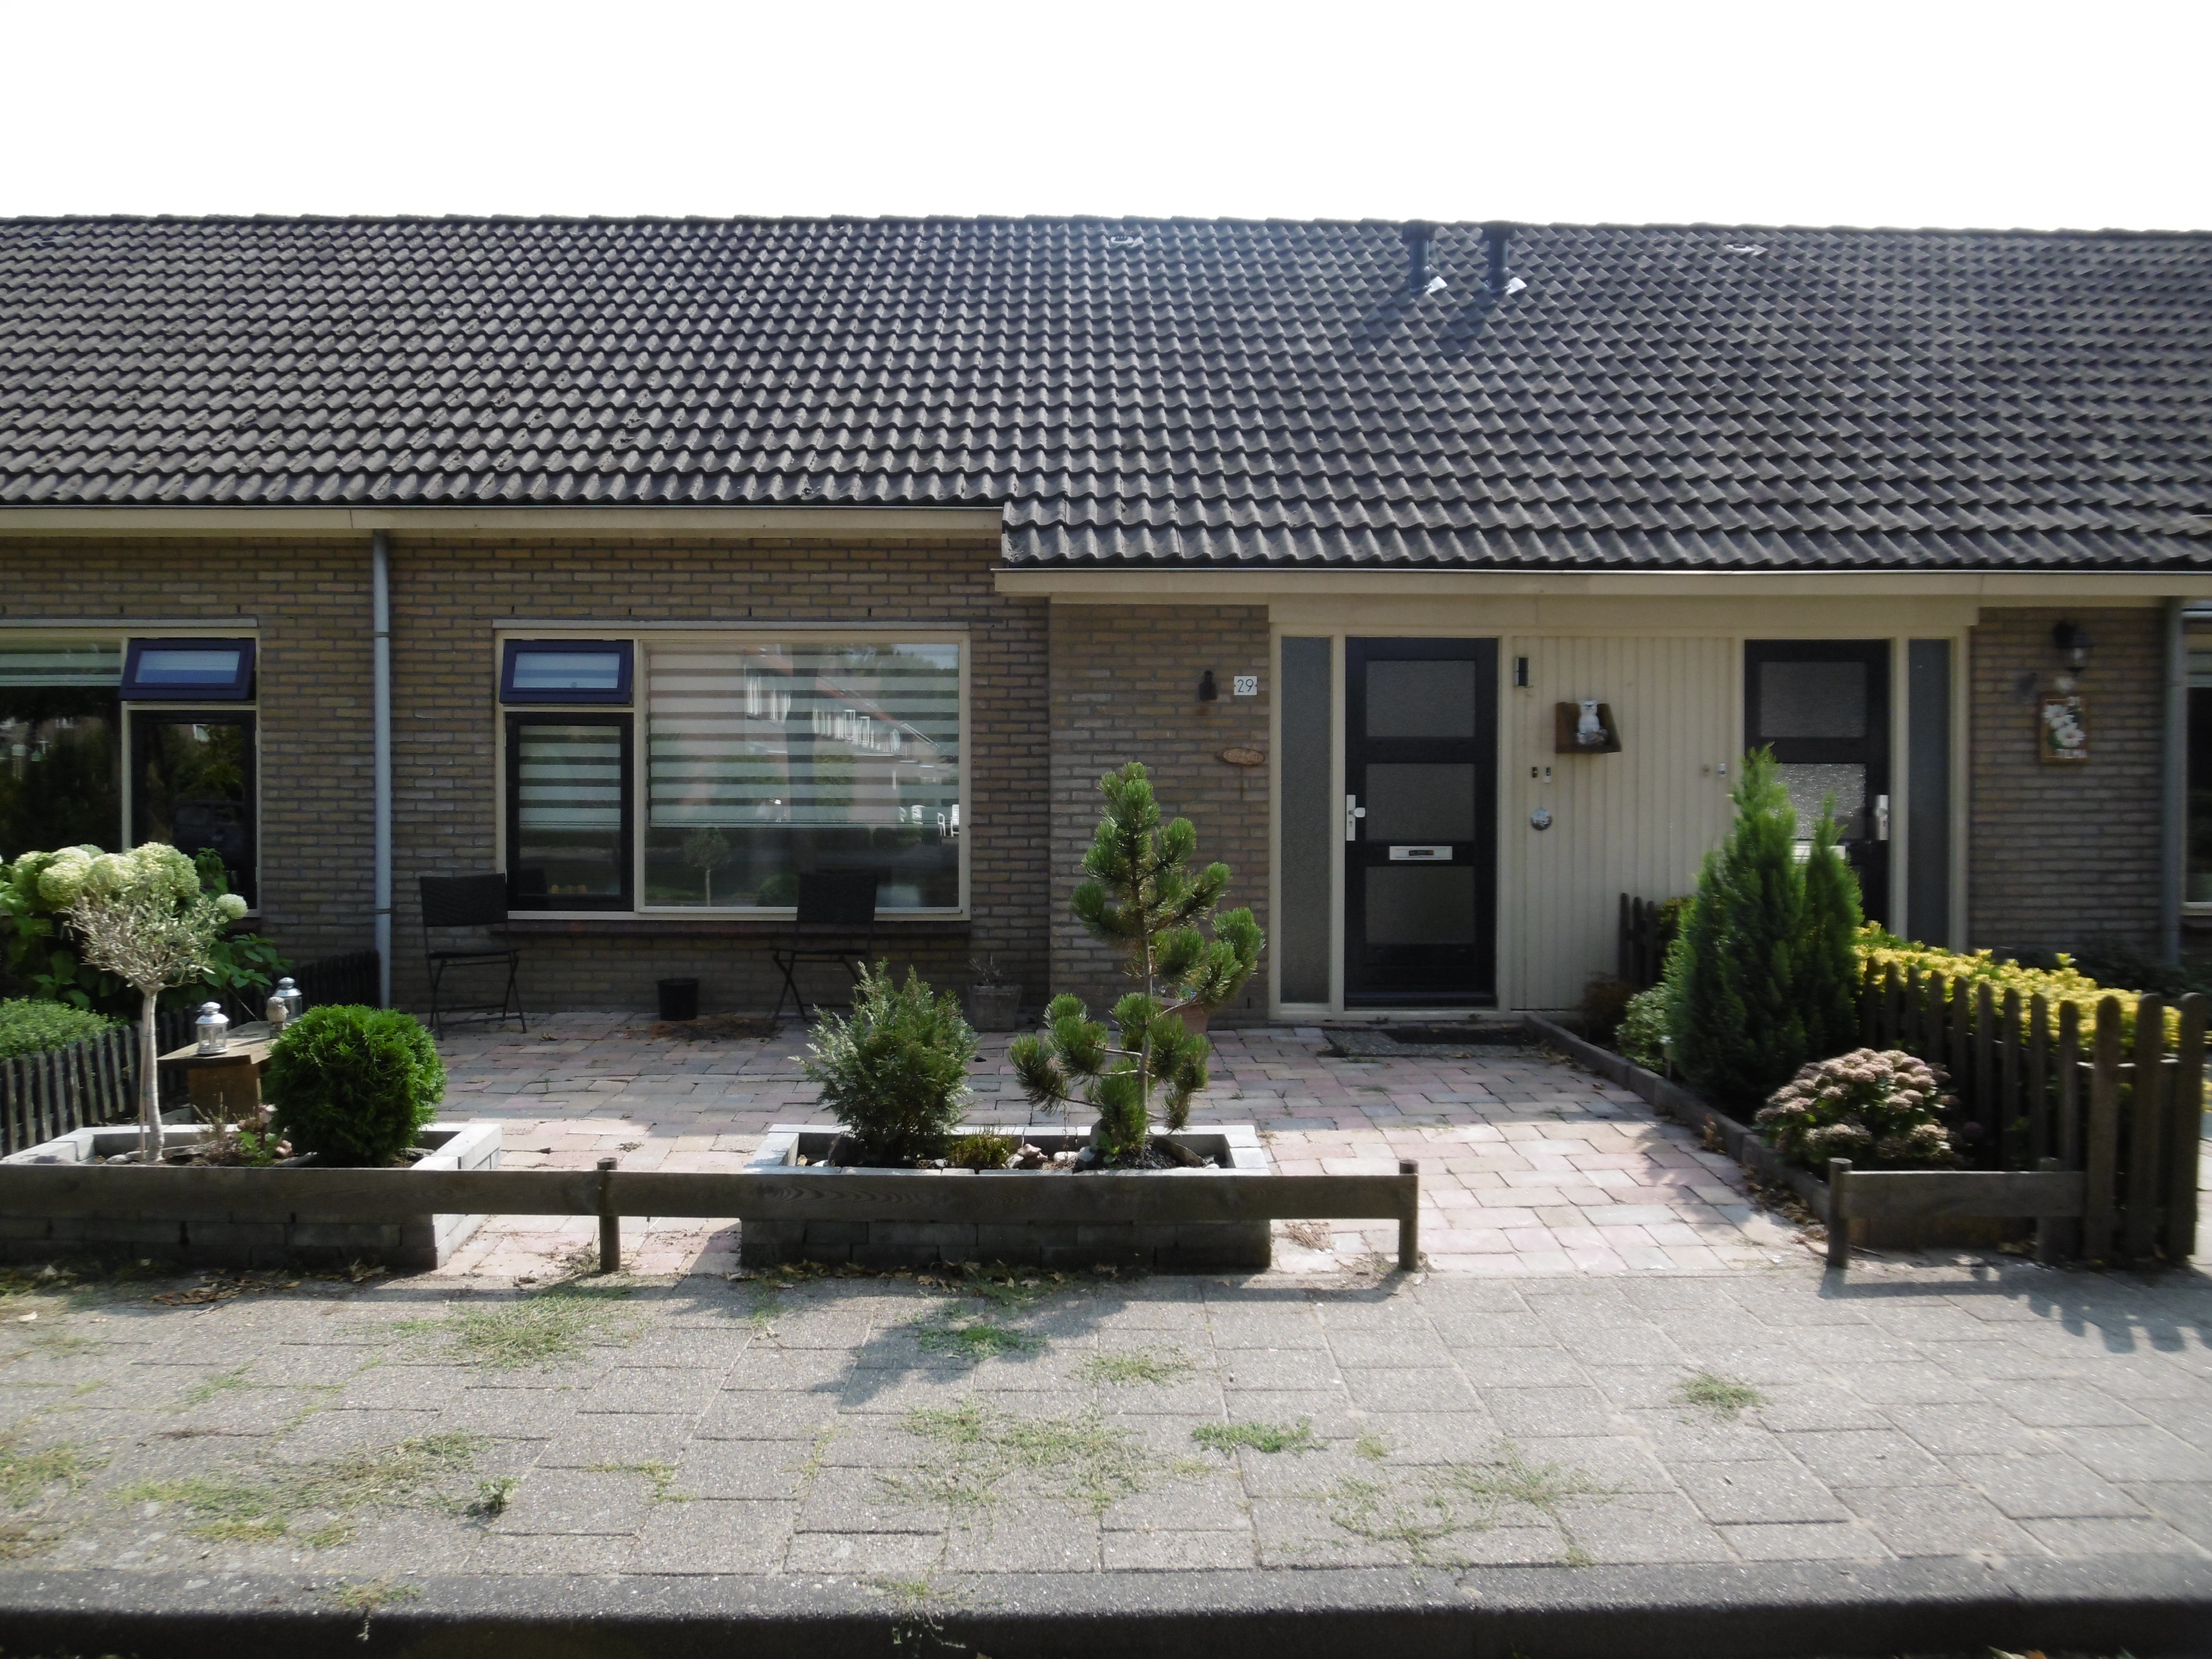 Schoolstraat 29, 8315 AT Luttelgeest, Nederland